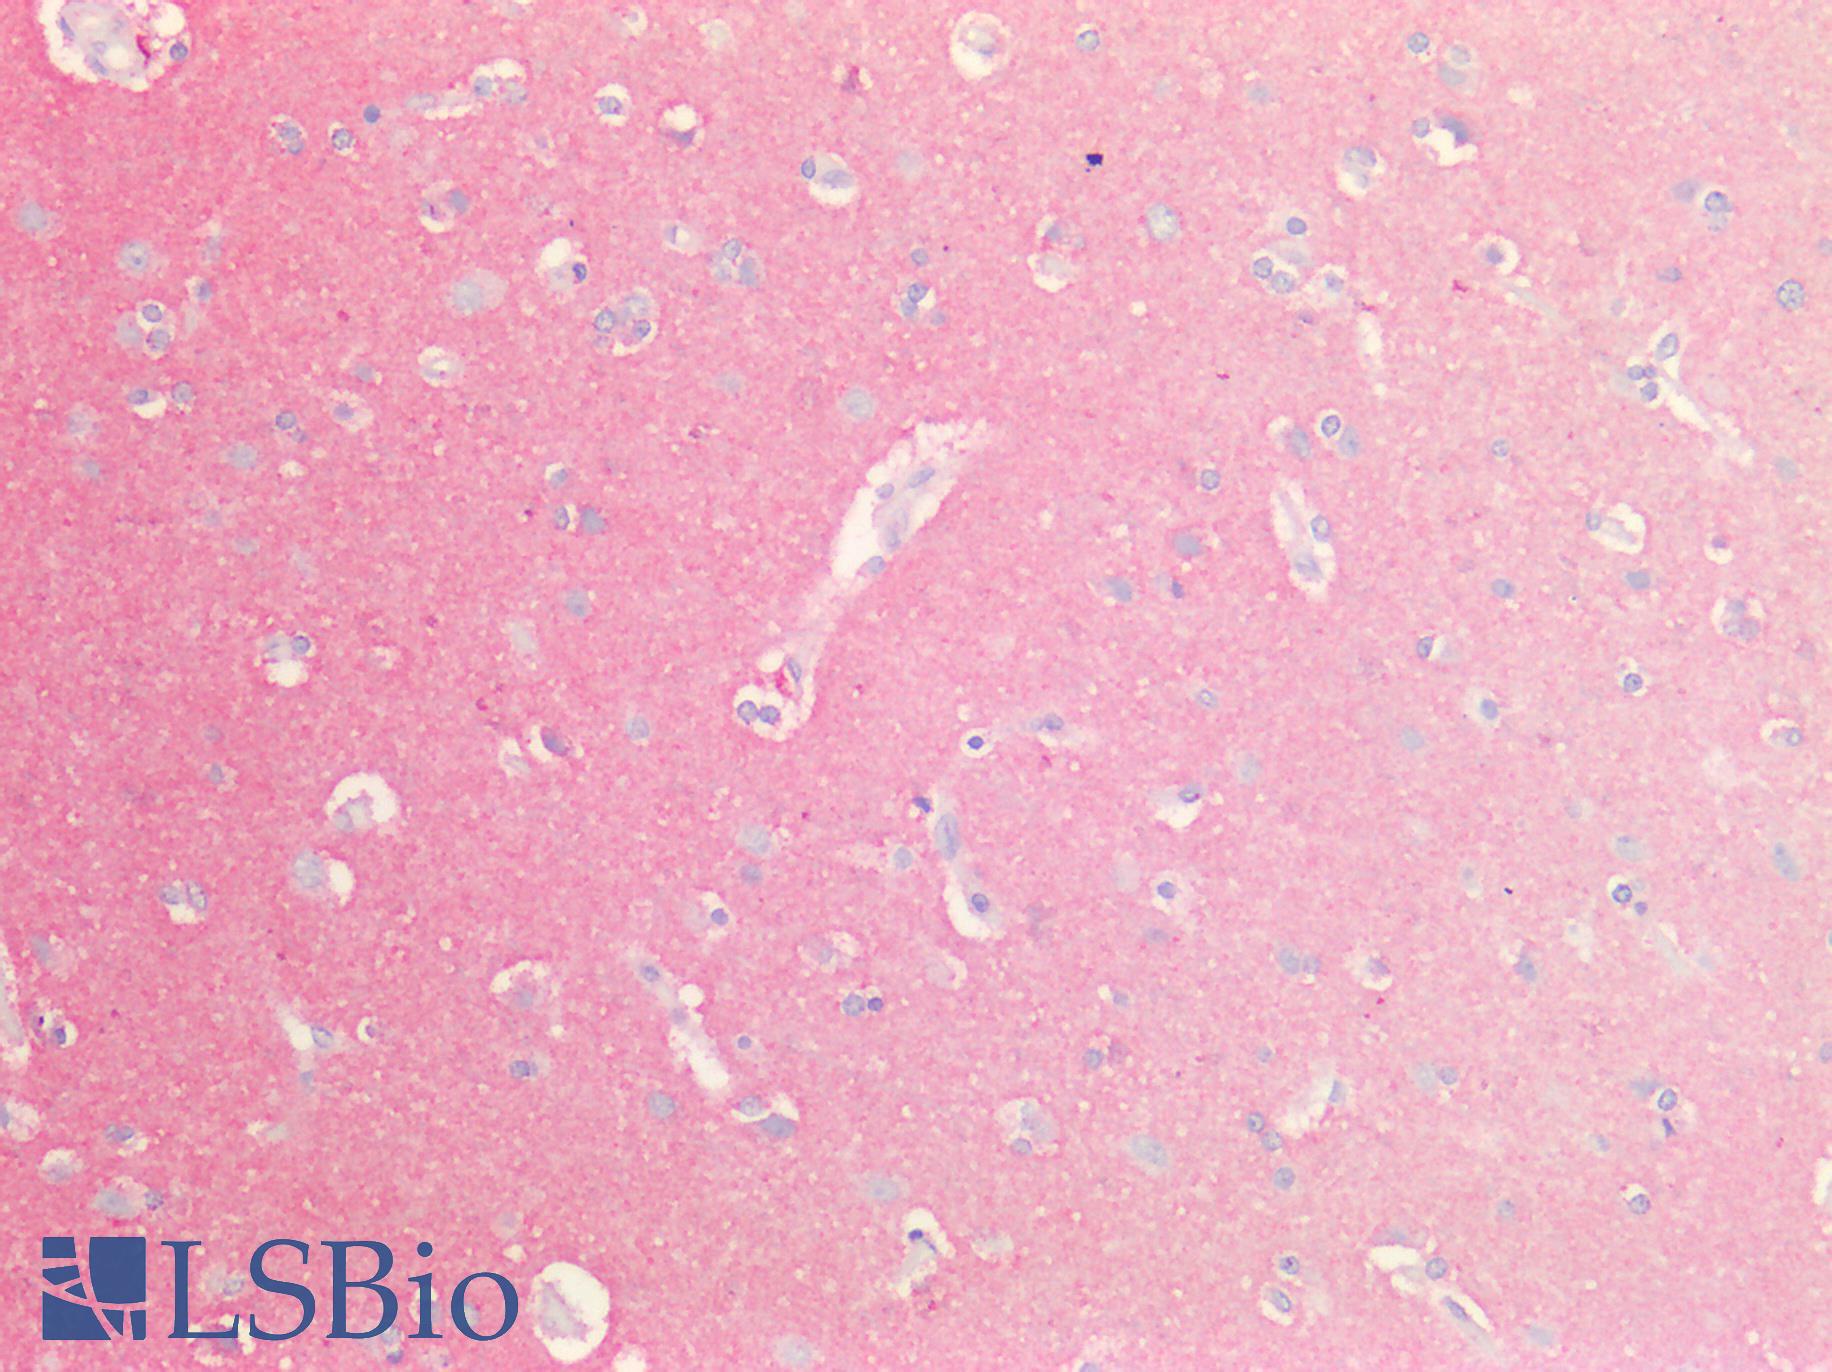 GNAQ Antibody - Human Brain, Cortex: Formalin-Fixed, Paraffin-Embedded (FFPE)